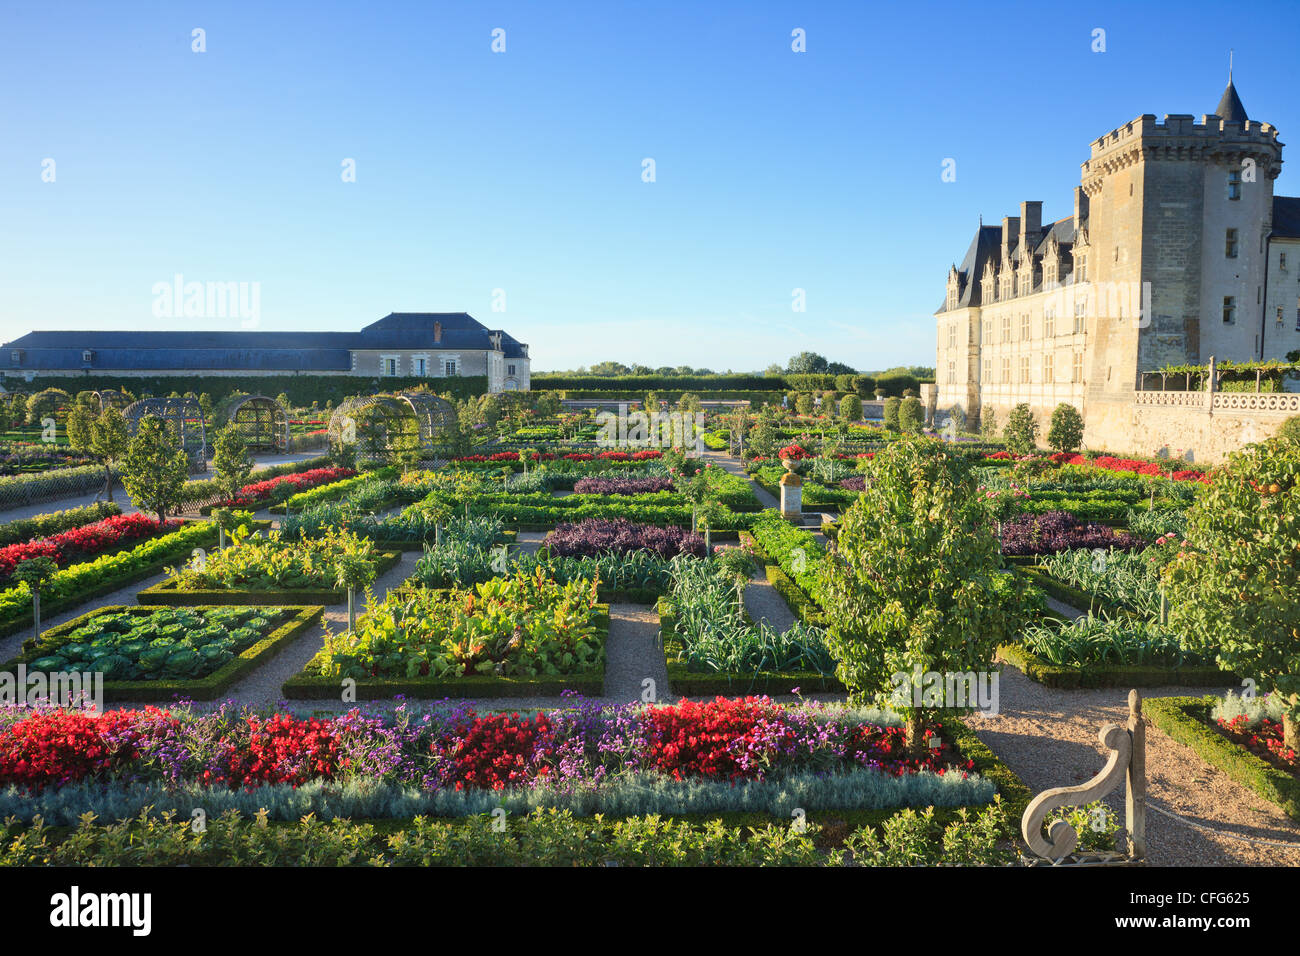 France, Gardens of Villandry castle, the kitchen garden treated like a 'jardin à la française'. Stock Photo